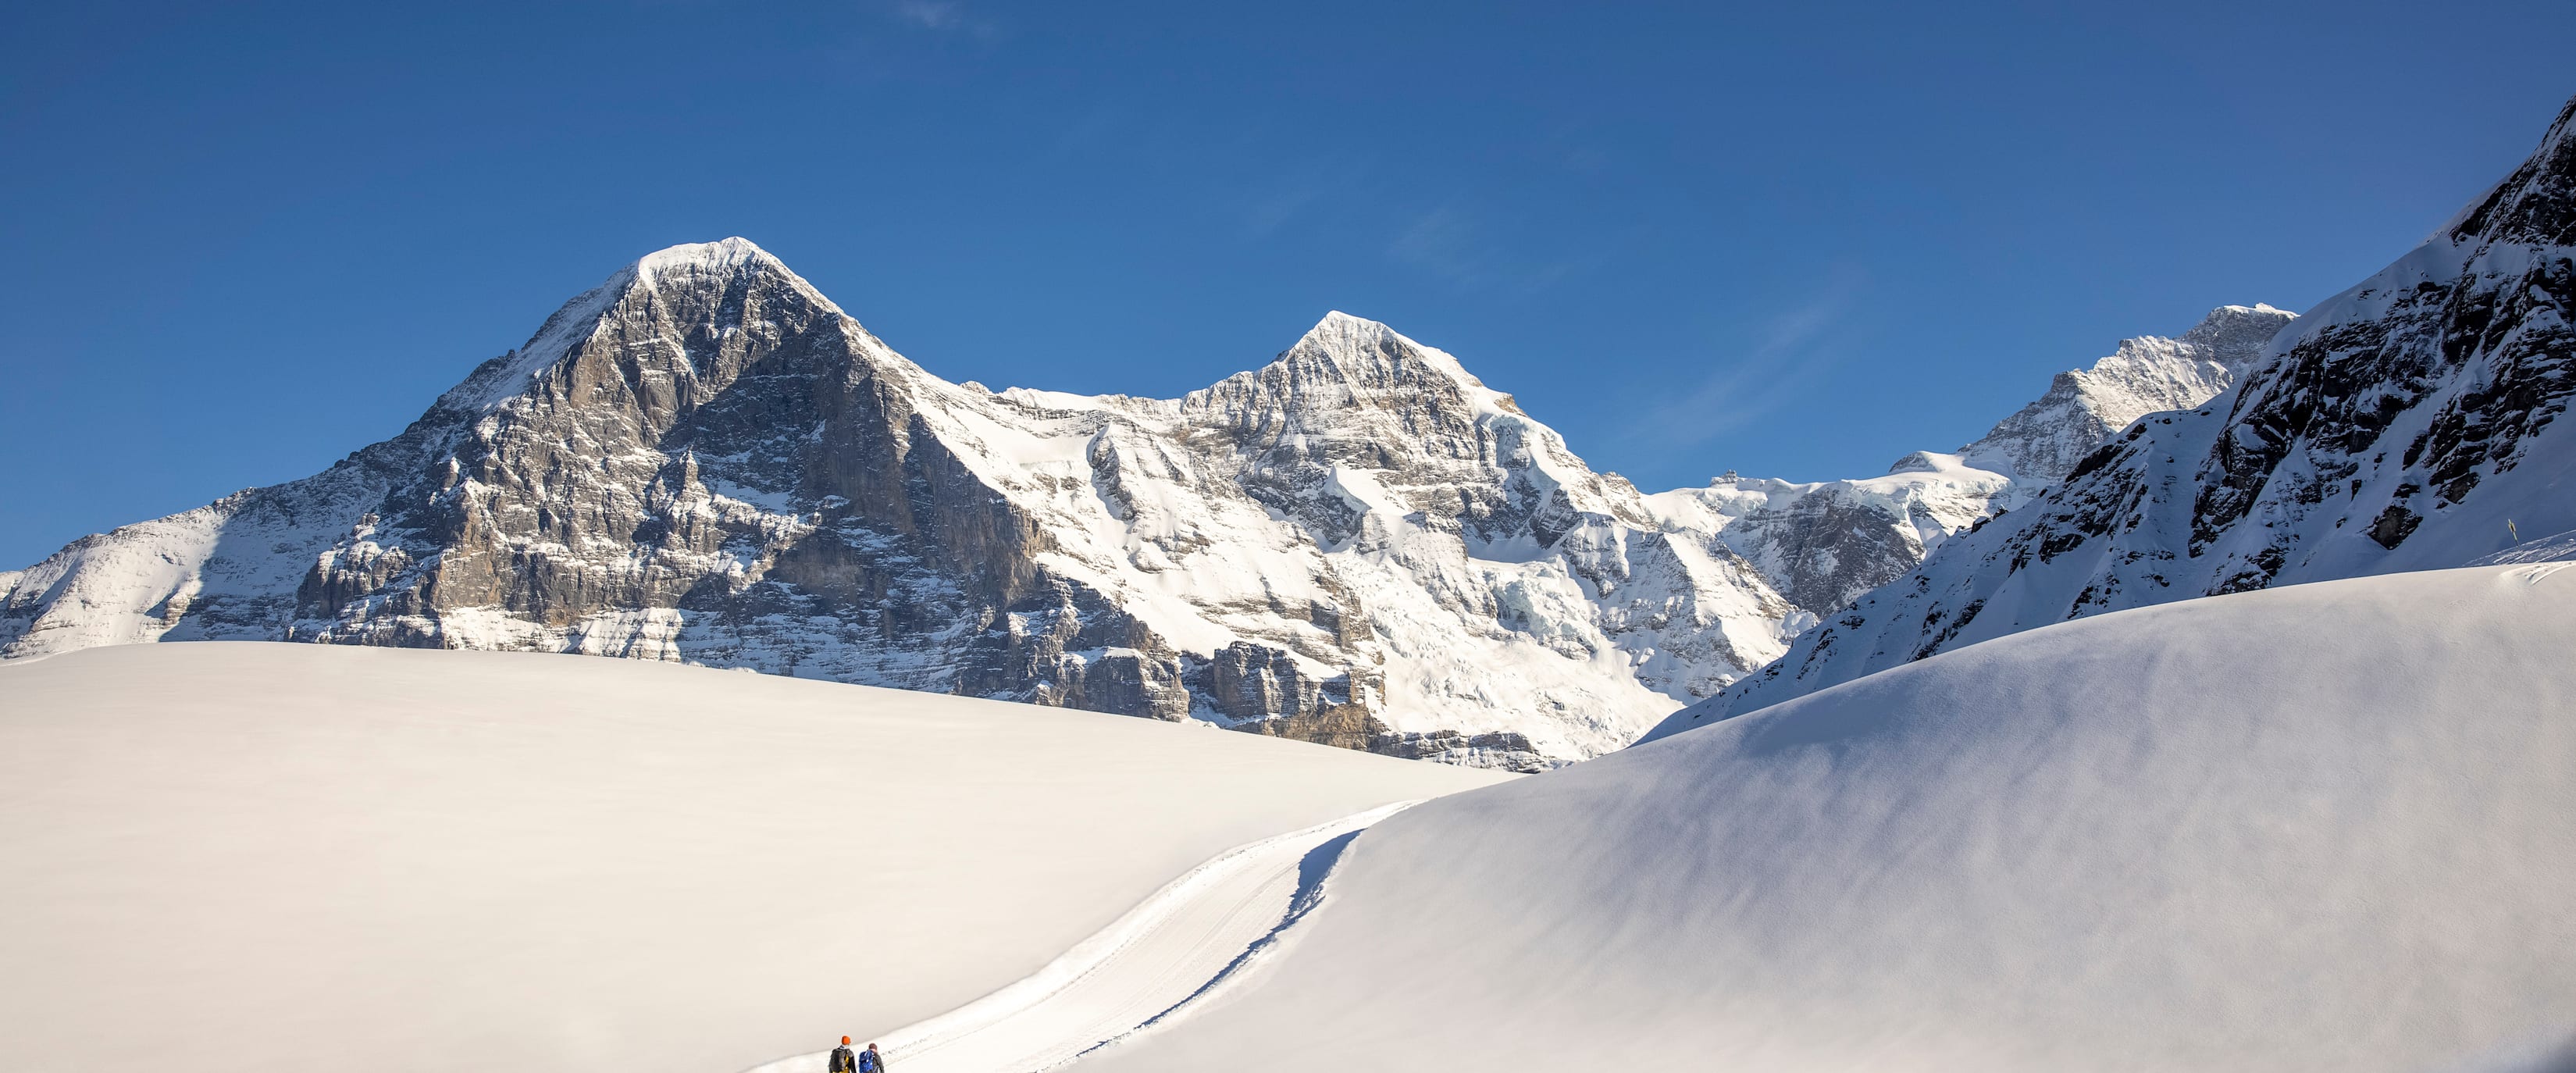 Winterwandern Kleine Scheidegg Maennlichen Eiger Moench Jungfrau 2